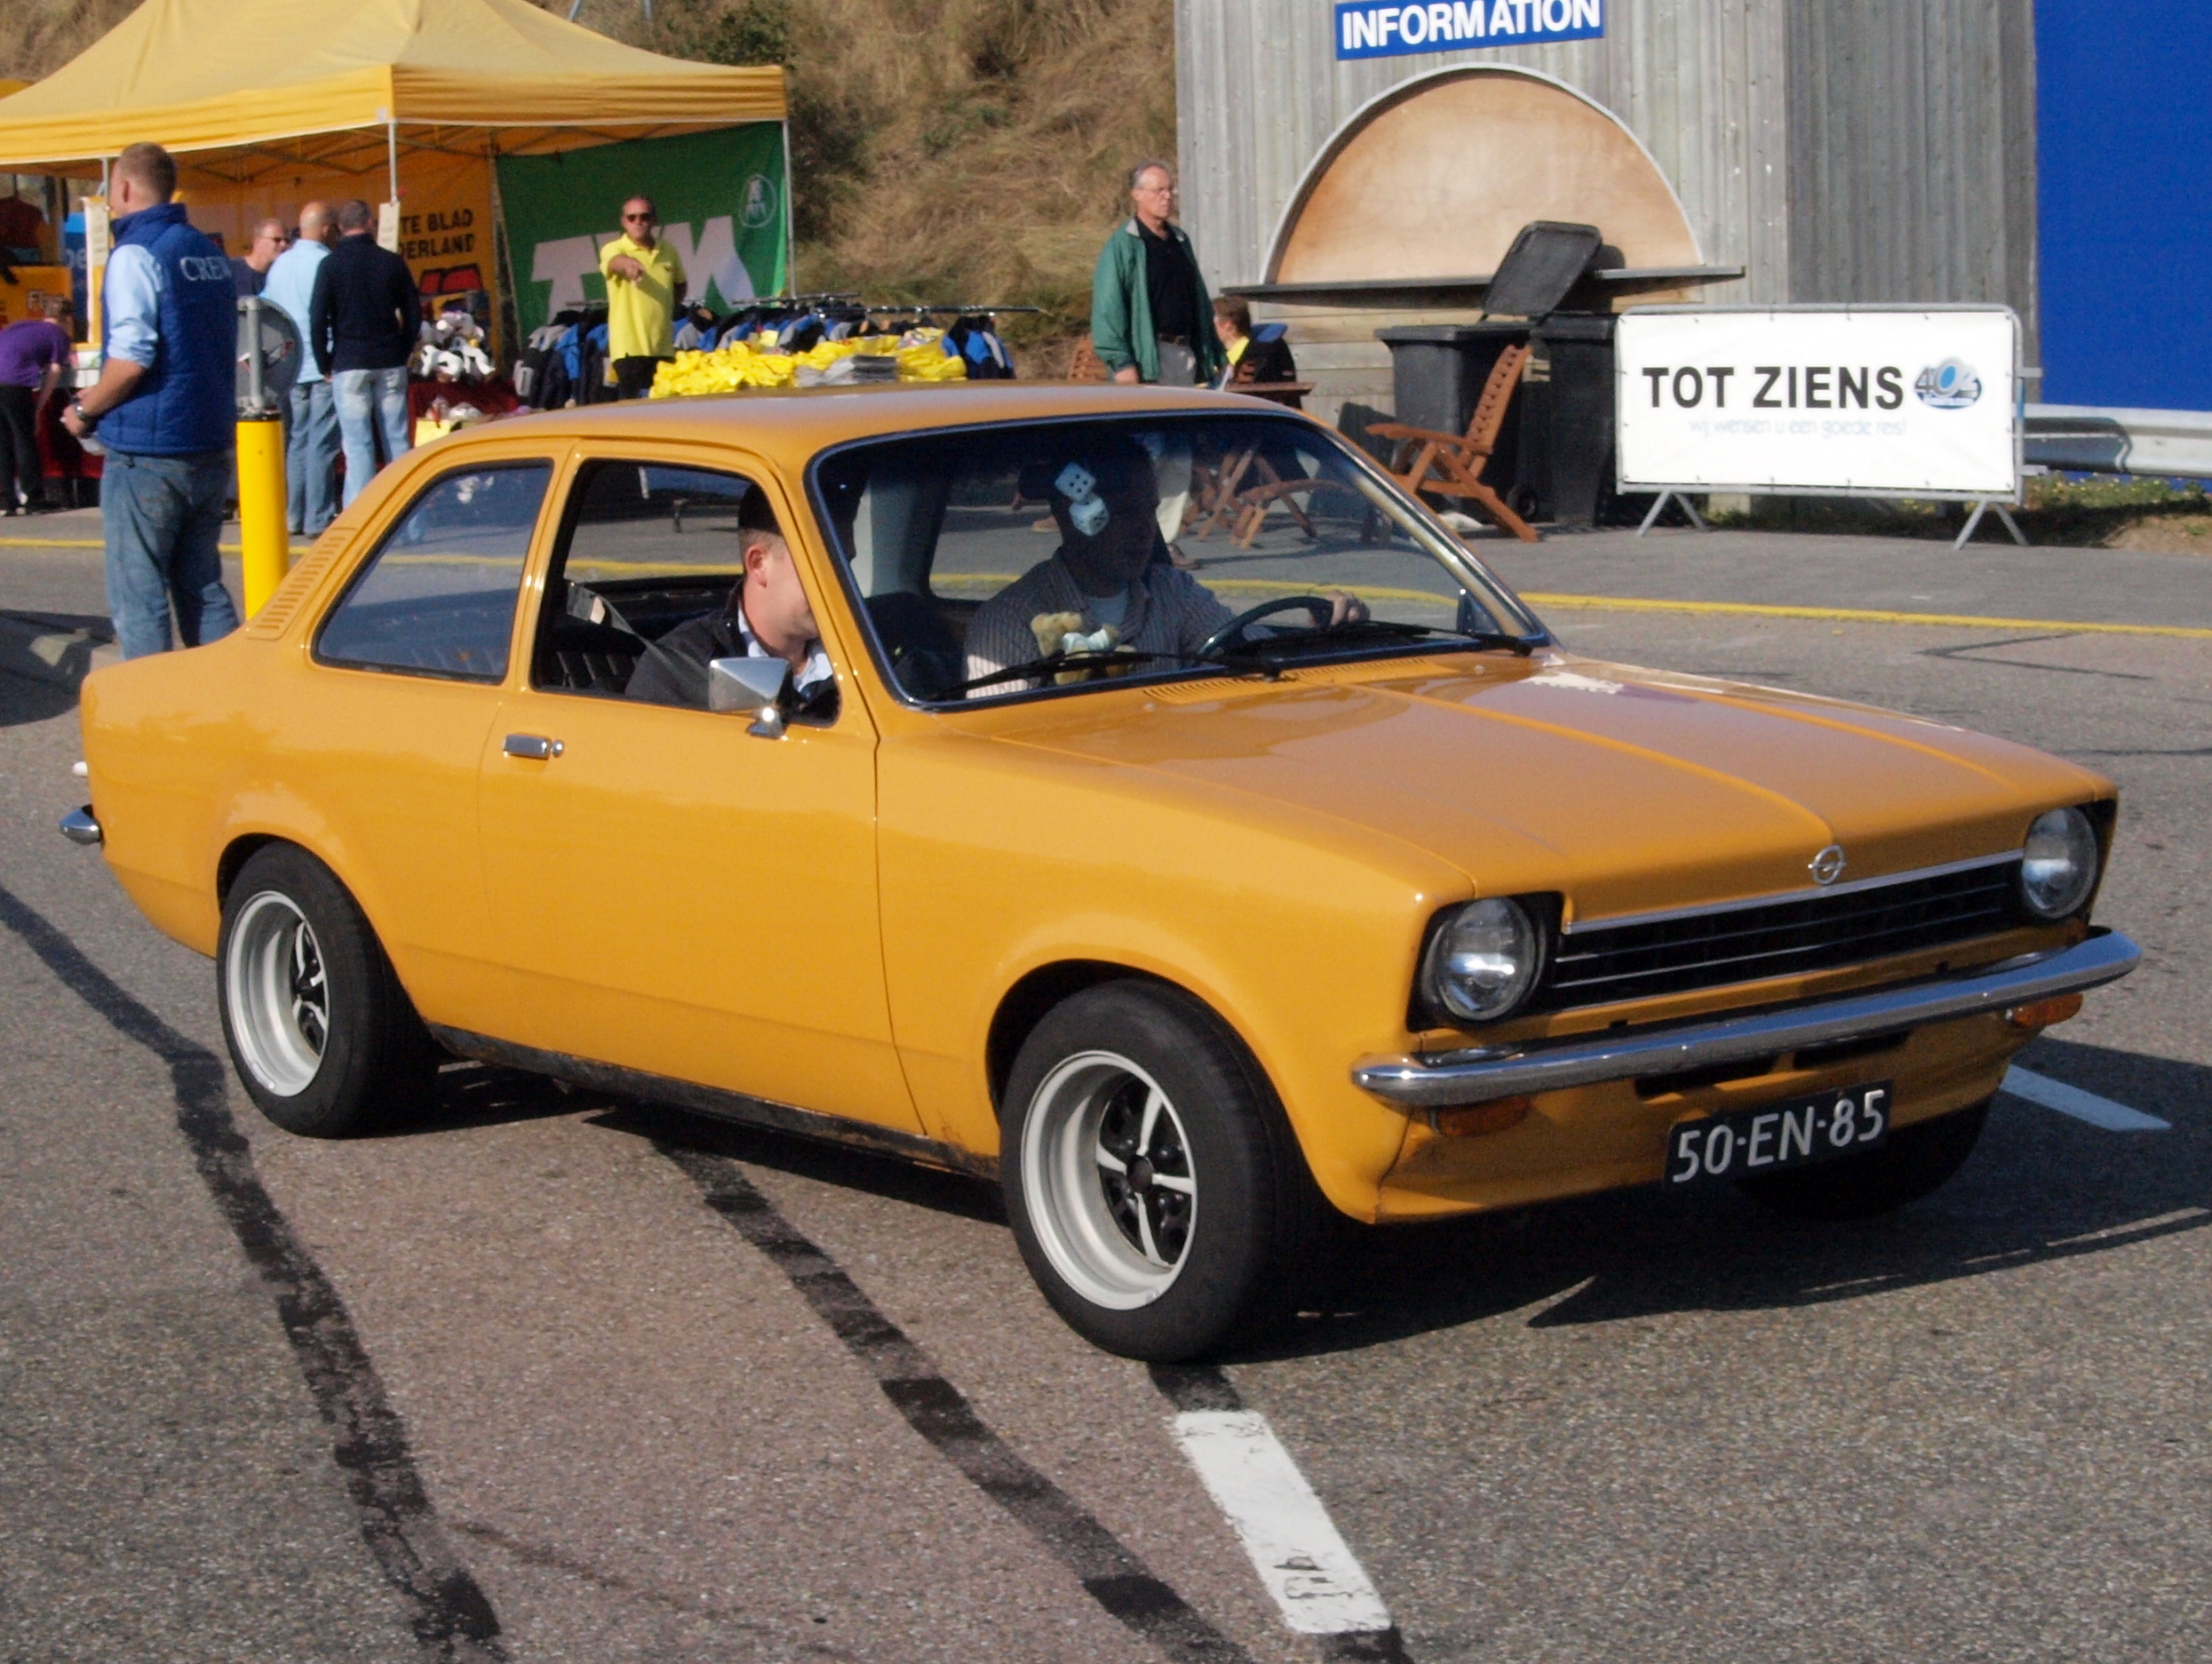 File:Opel KADETT AUTOMATIC dutch licence registration 50-EN-85 pic3.JPG